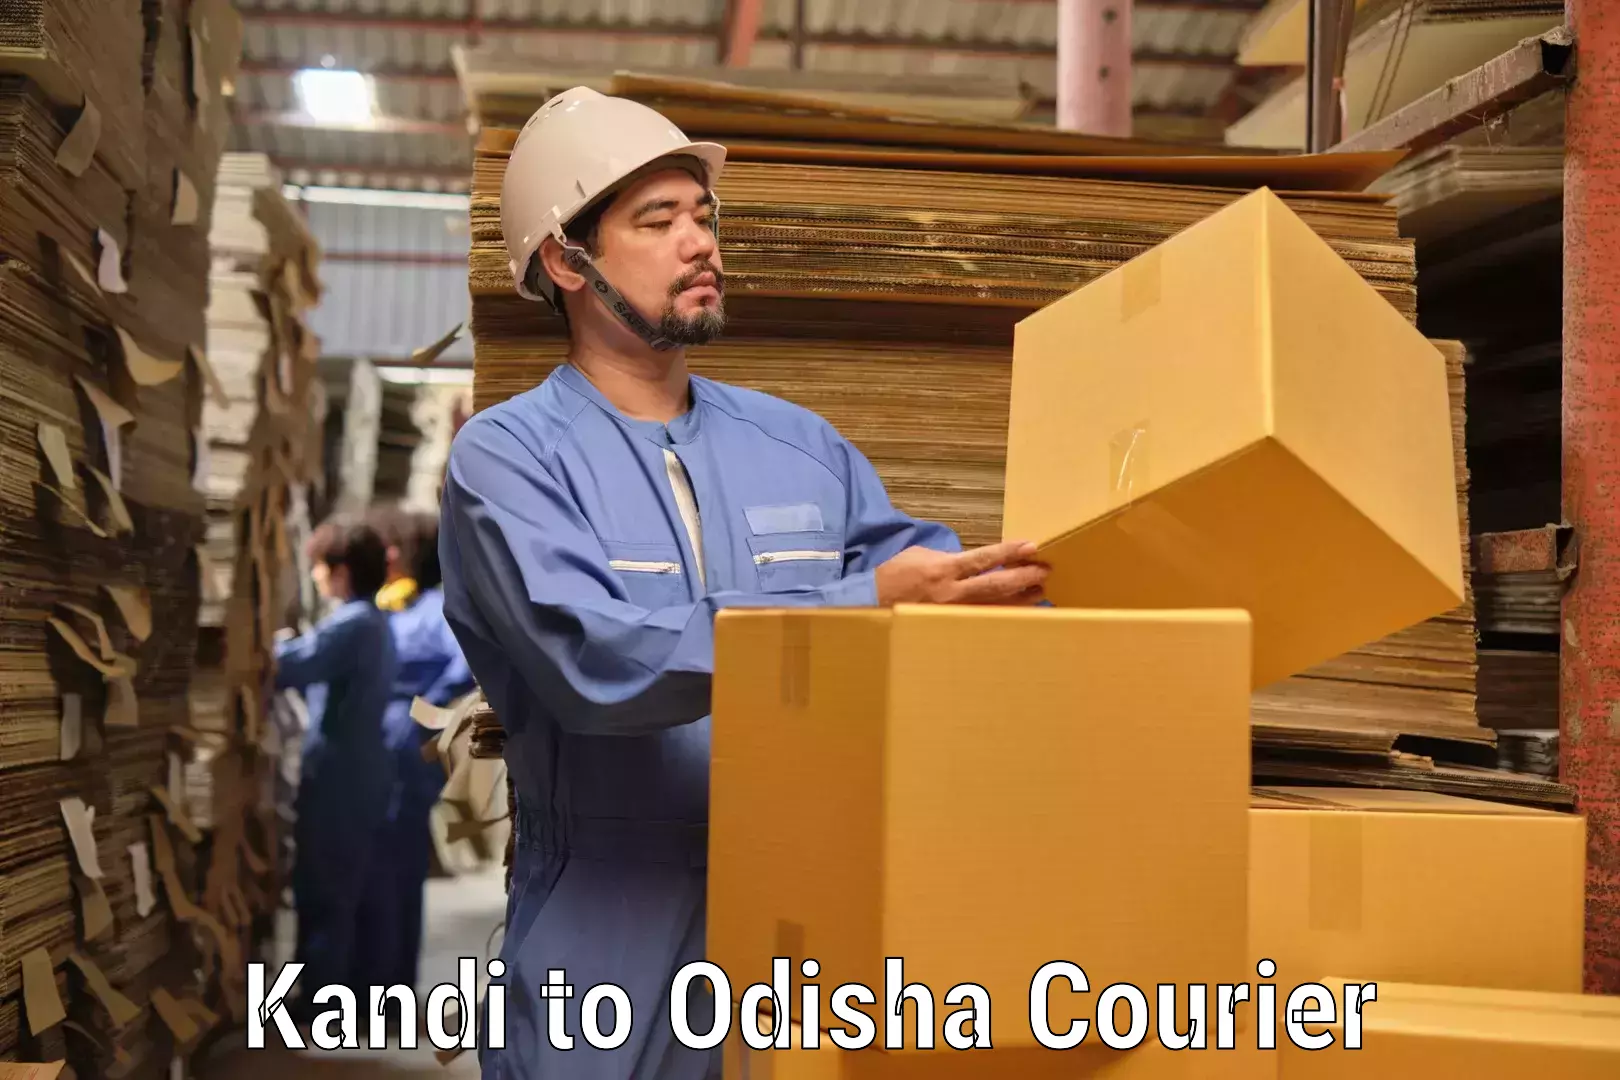 Business shipping needs Kandi to Asika